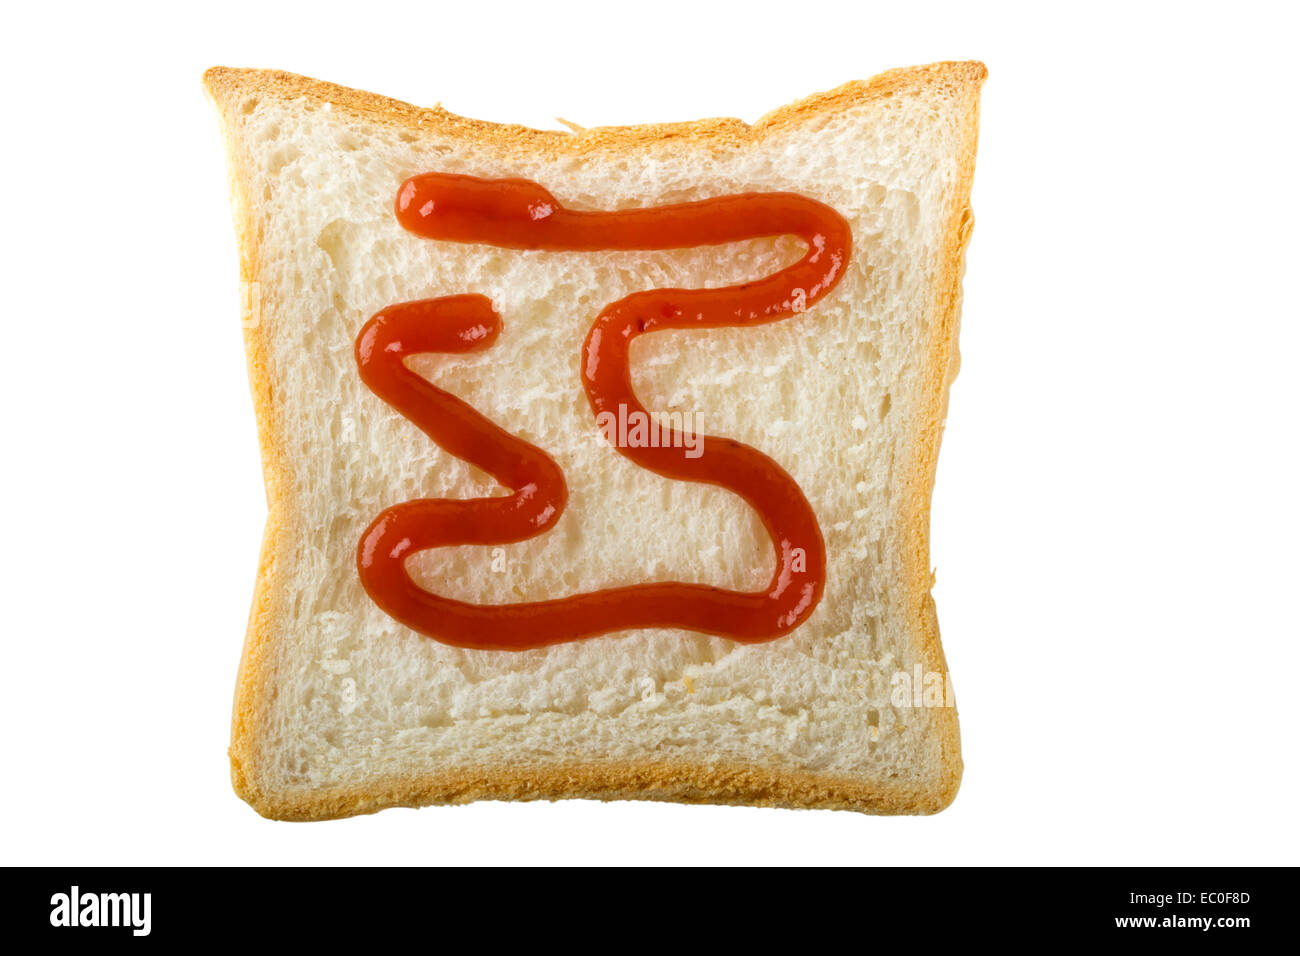 Fait à partir de la forme de ketchup et de tranche de pain, isolé sur fond blanc avec clipping path Banque D'Images